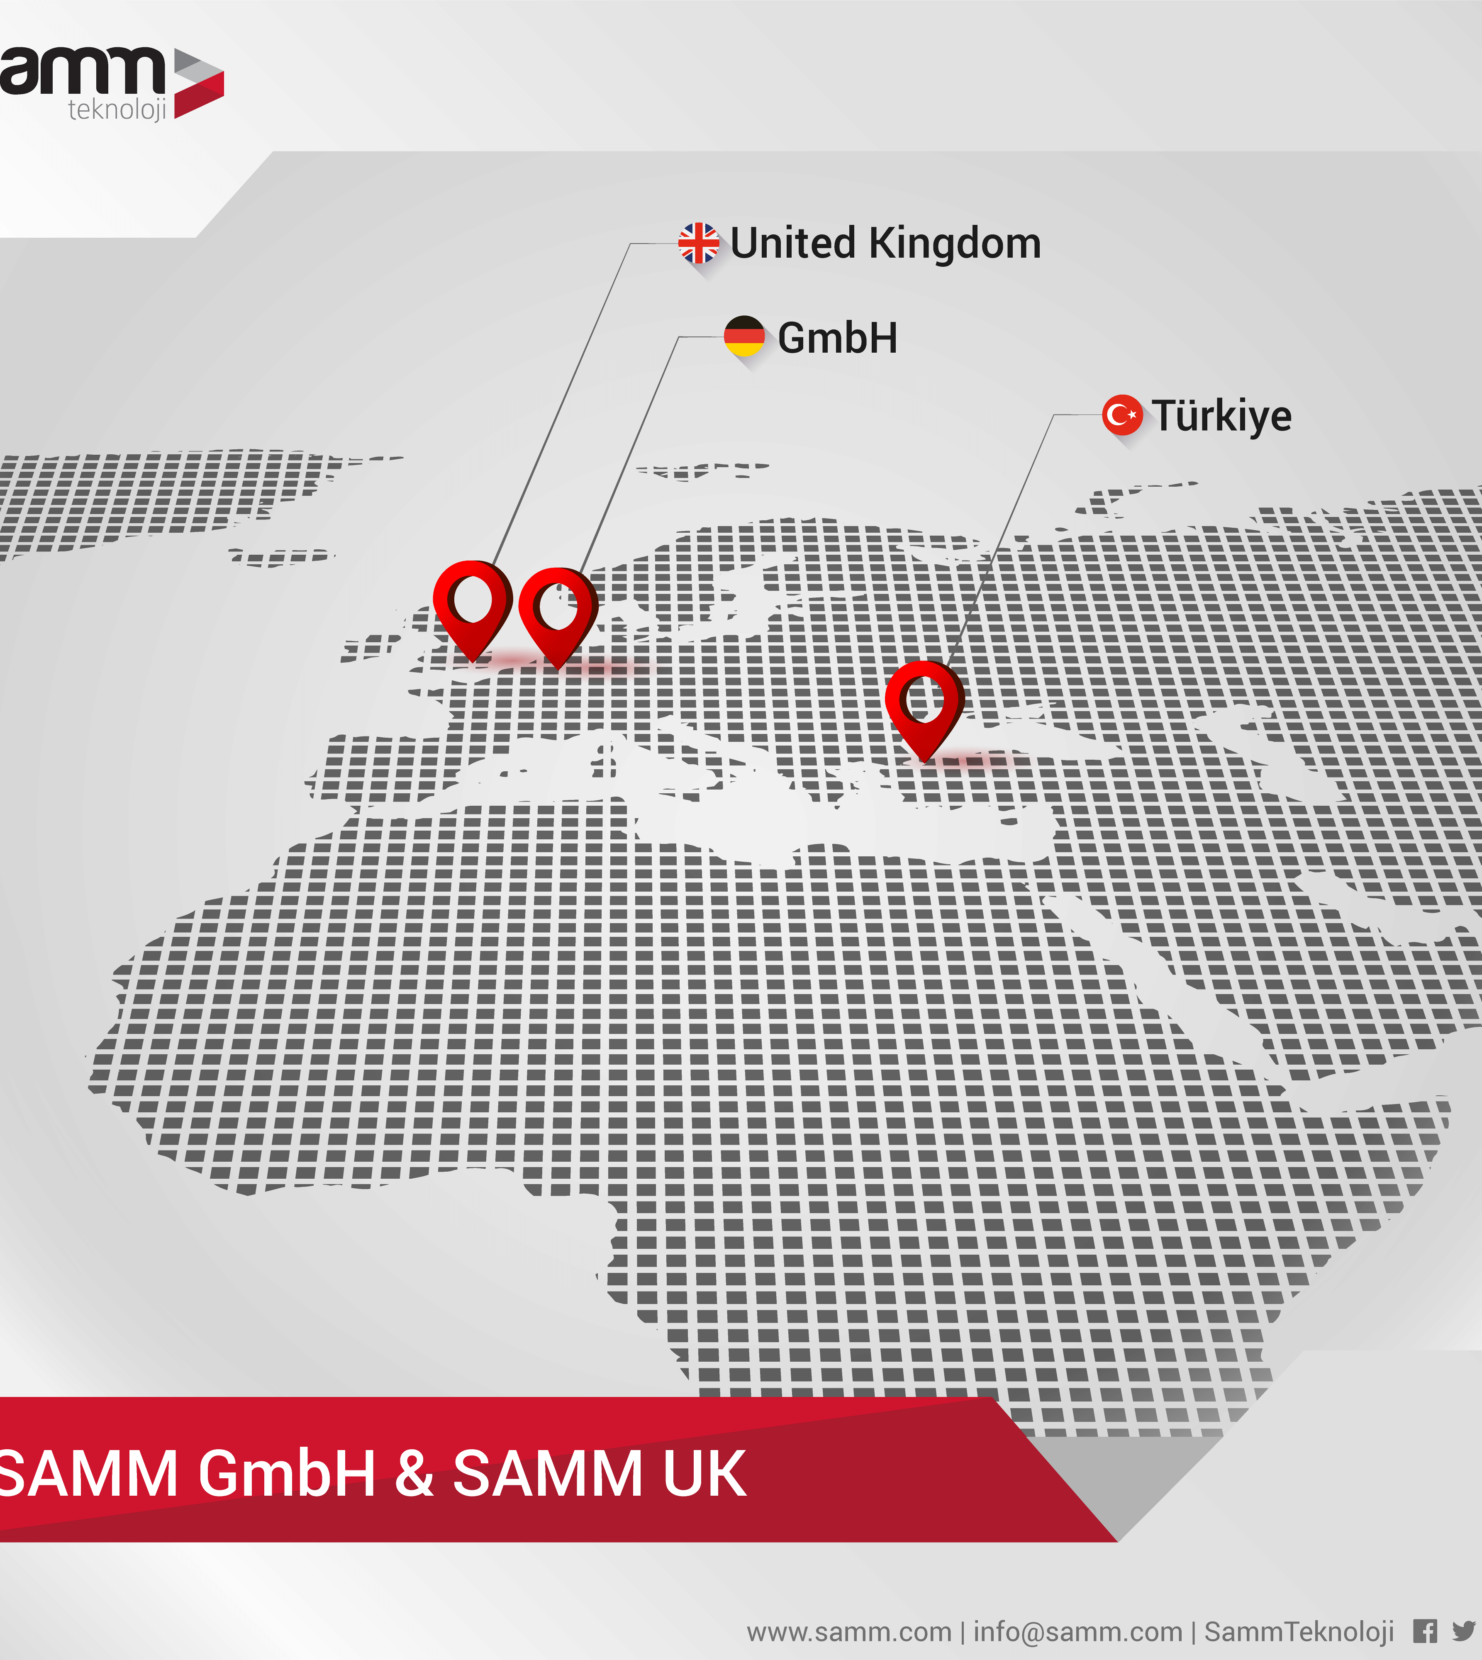 SAMM UK and SAMM GmbH, Opened